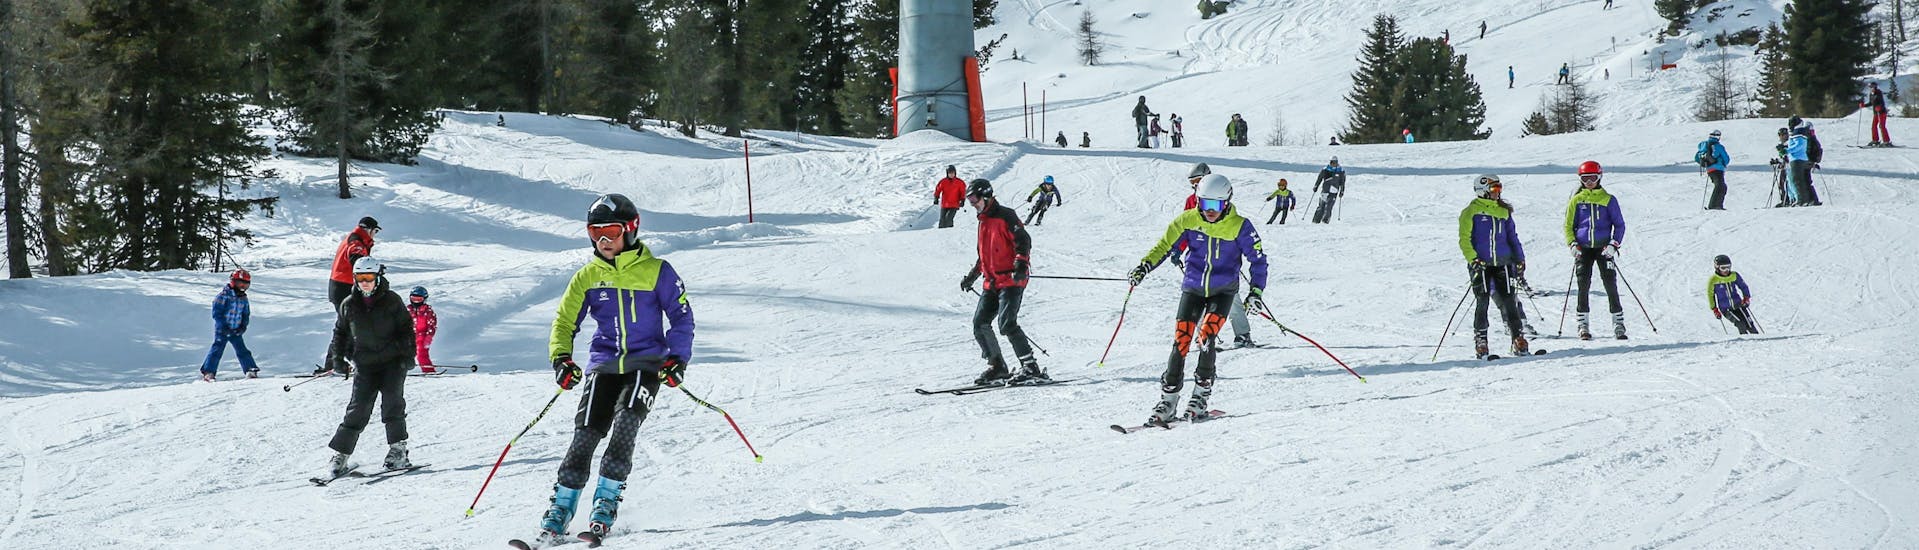 Adulti e bambini che sciano nella stazione sciistica di Kreishberg.